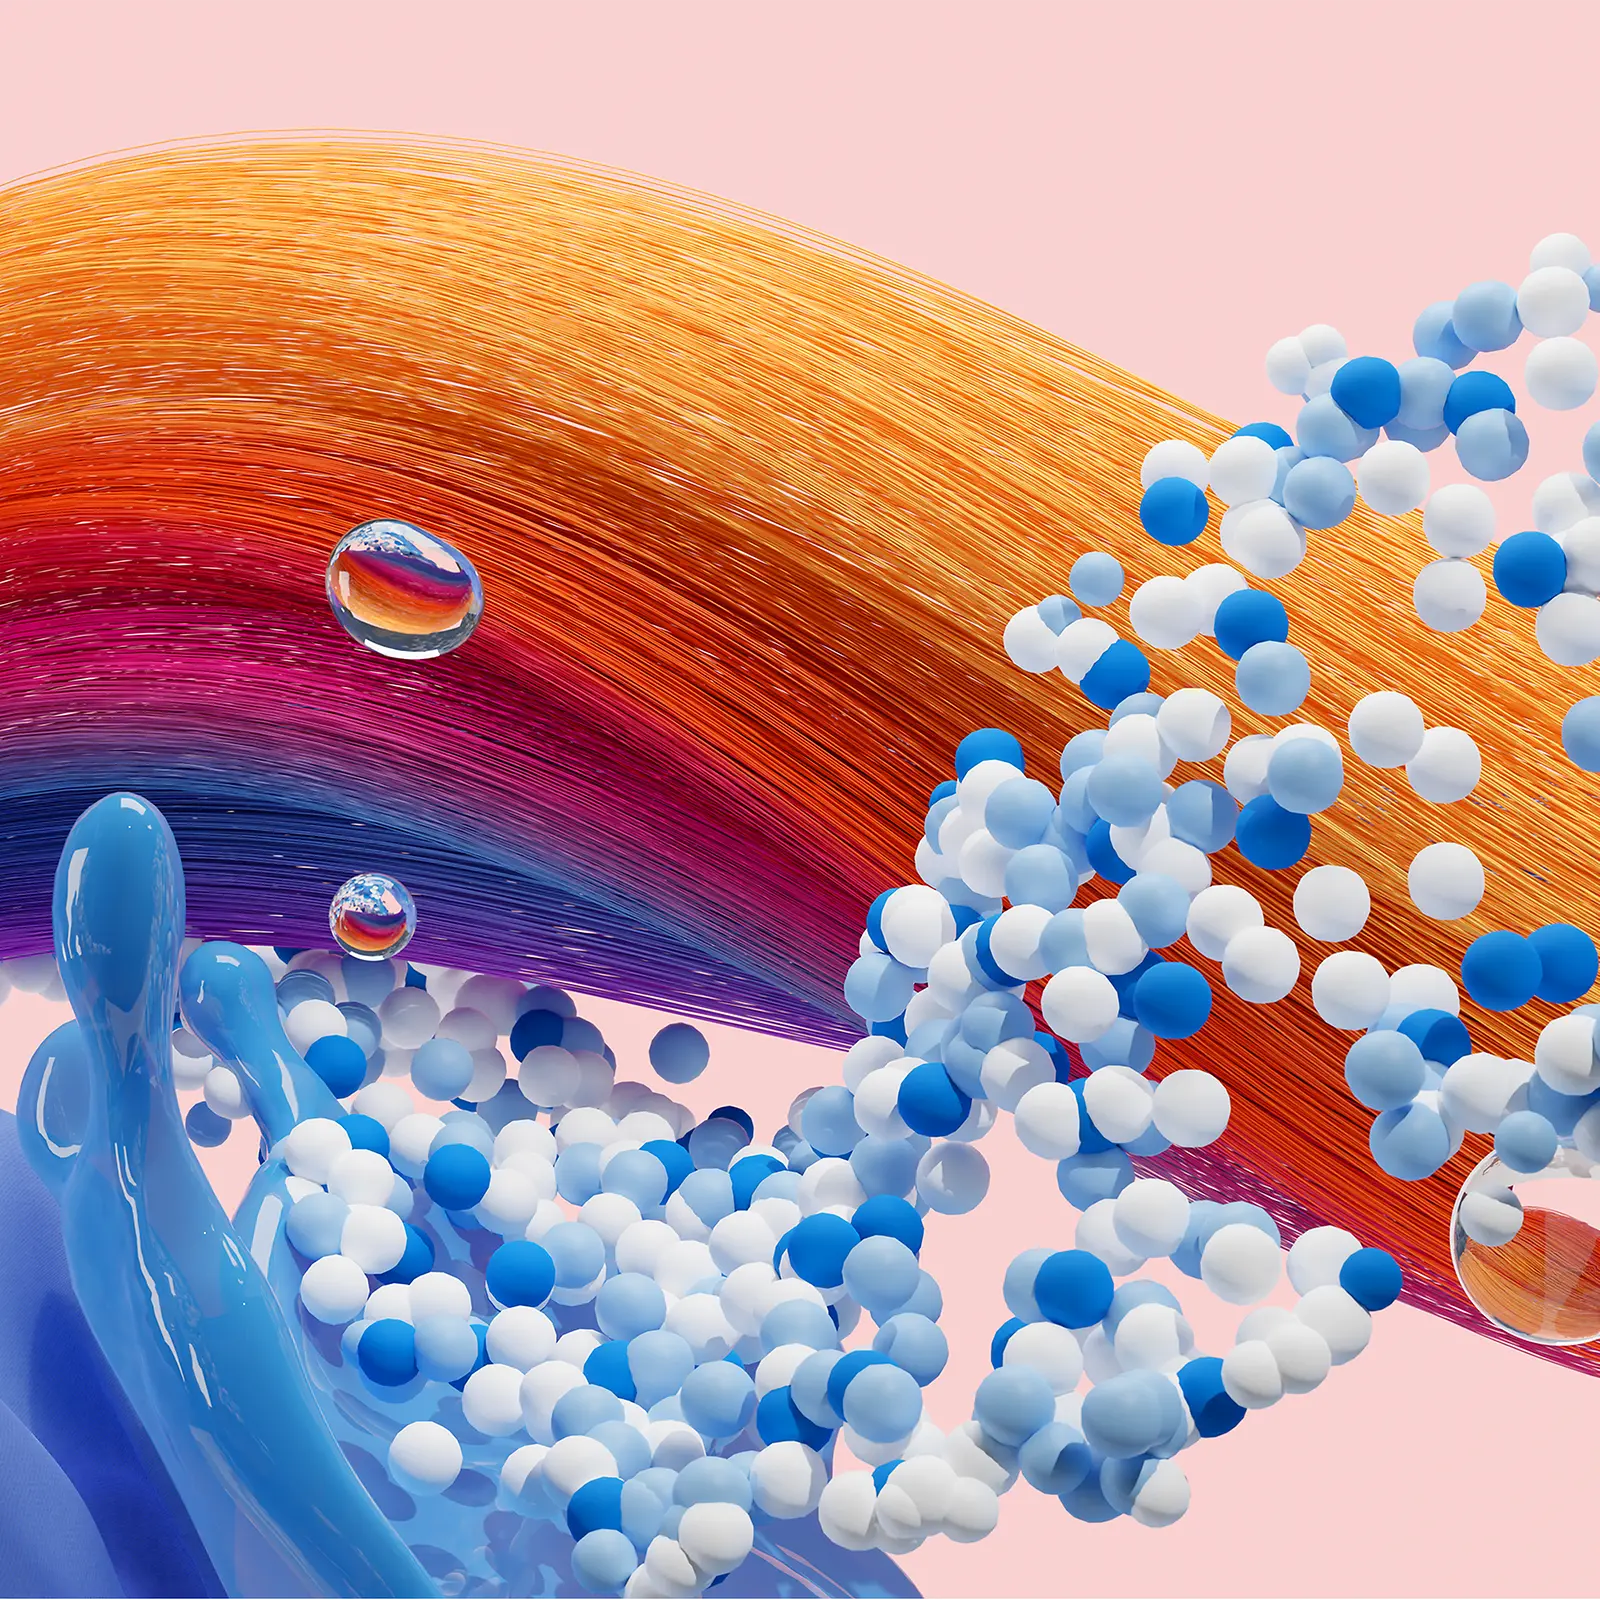 Abstraktní obrázek představující obchodní značku Henkel Consumer Brand, která reprezentuje produkty Hair a Laundry & Home Care.